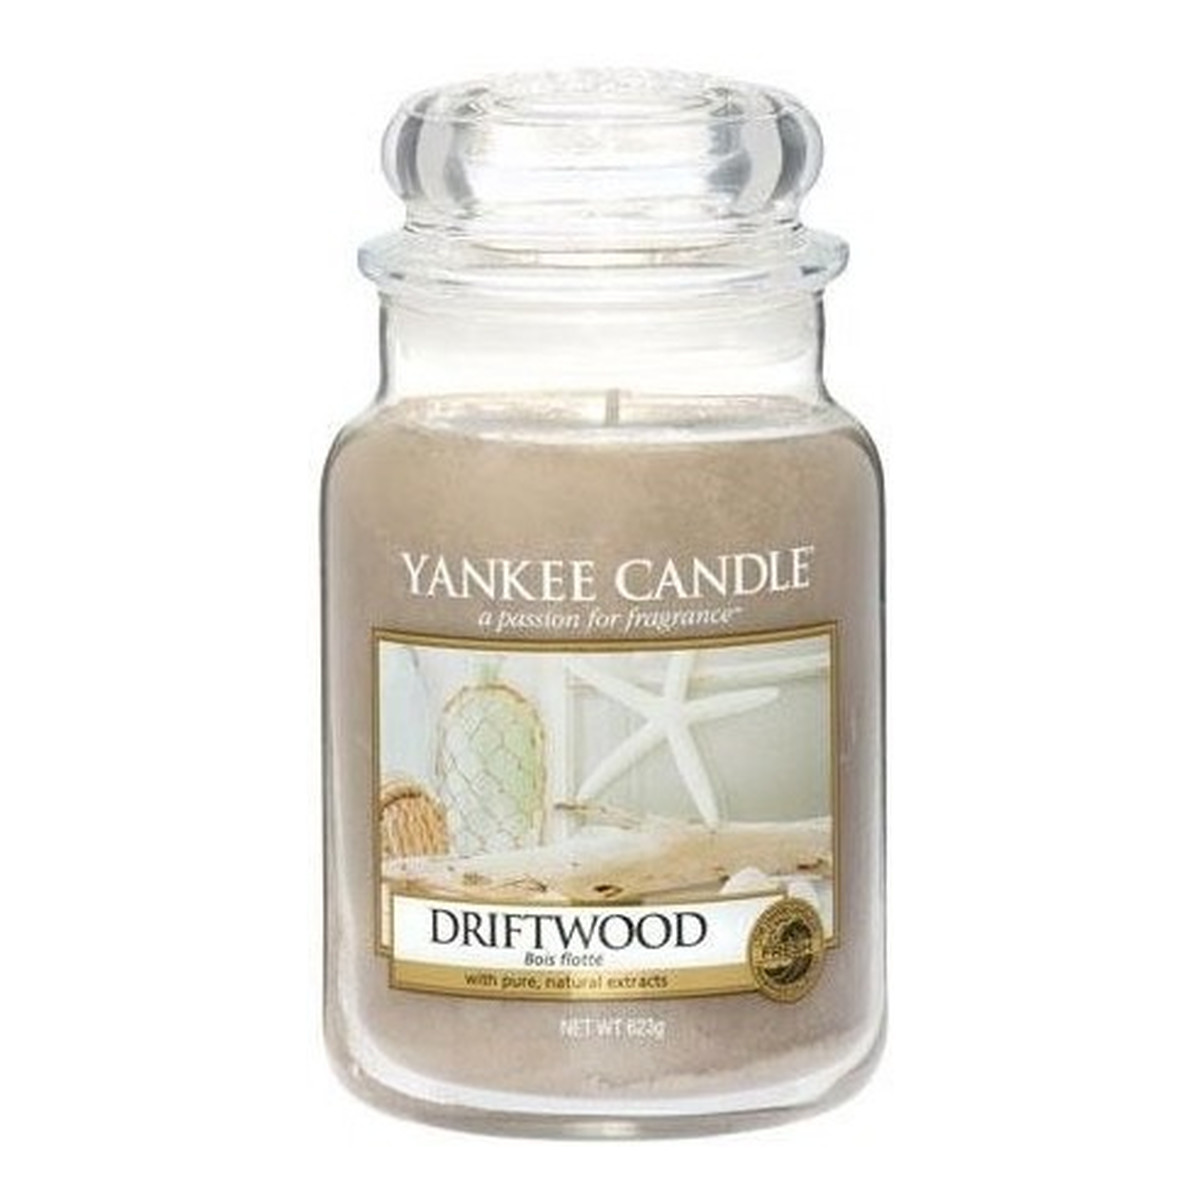 Yankee Candle Large Jar Duża świeczka zapachowa Drift Wood 623g